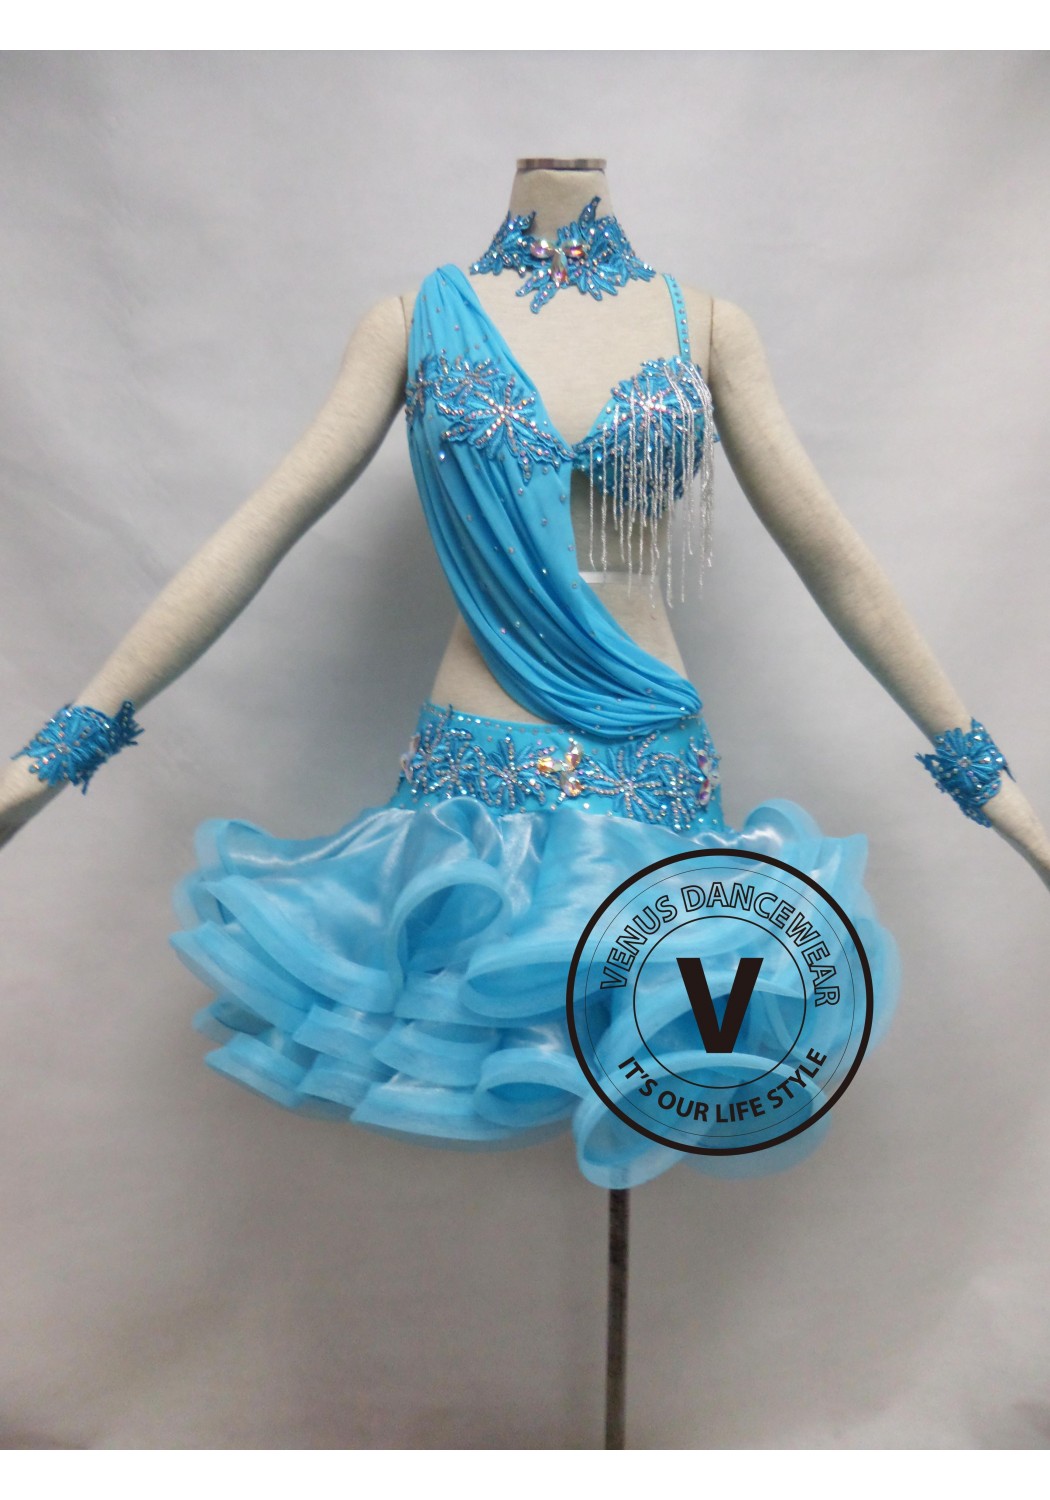 Babyblue Competition Latin Rhythm Dancing Dress